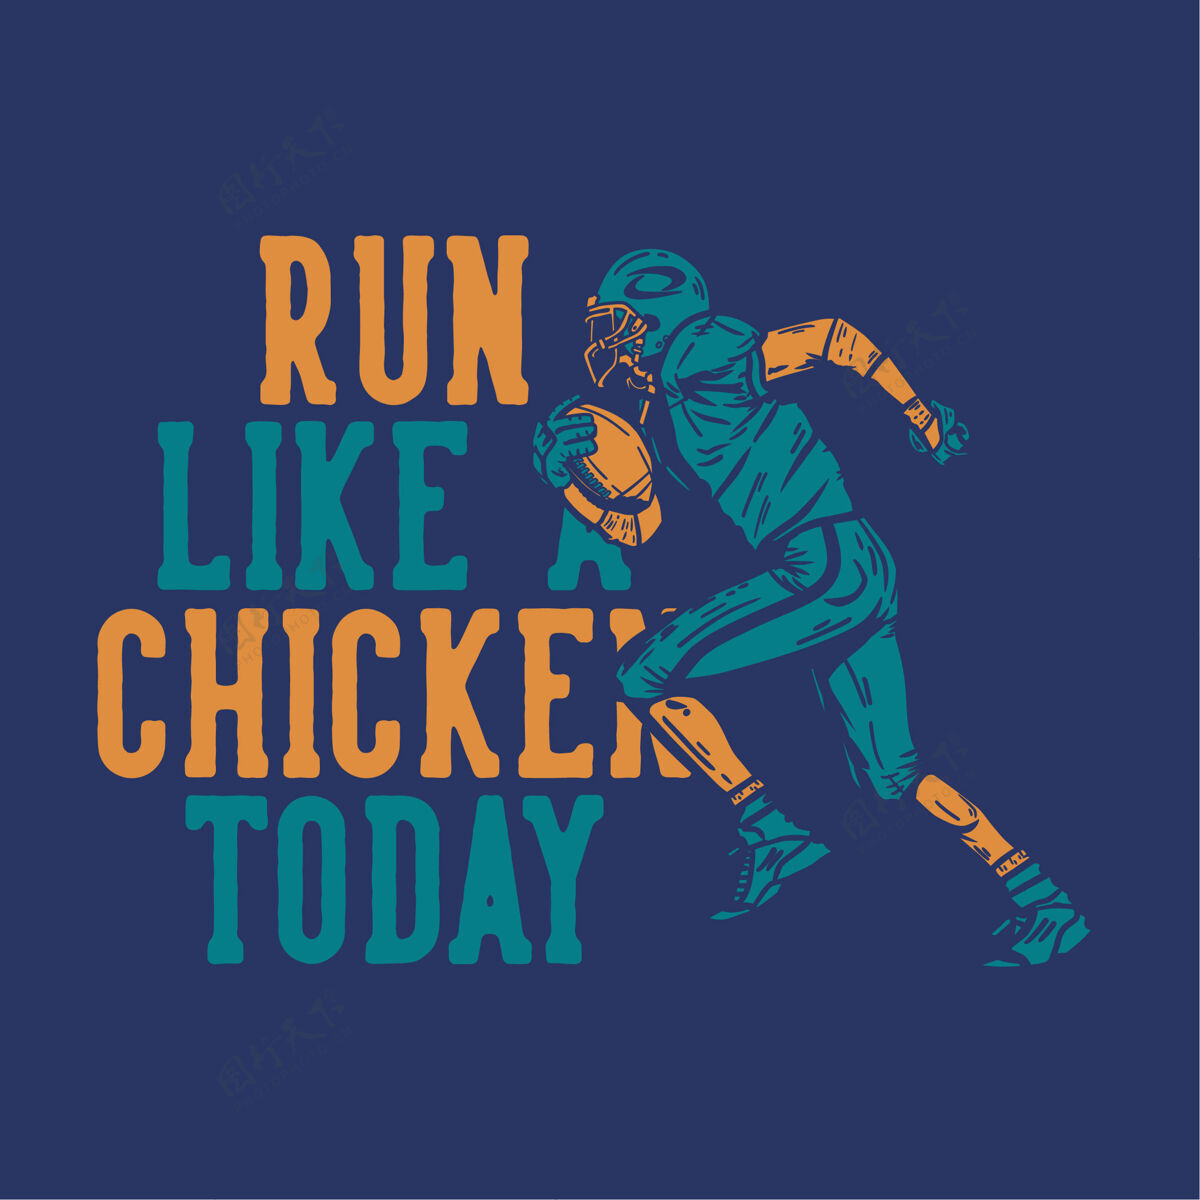 美式T恤设计今天像鸡一样奔跑 足球运动员在奔跑时拿着橄榄球美式足球比赛运动